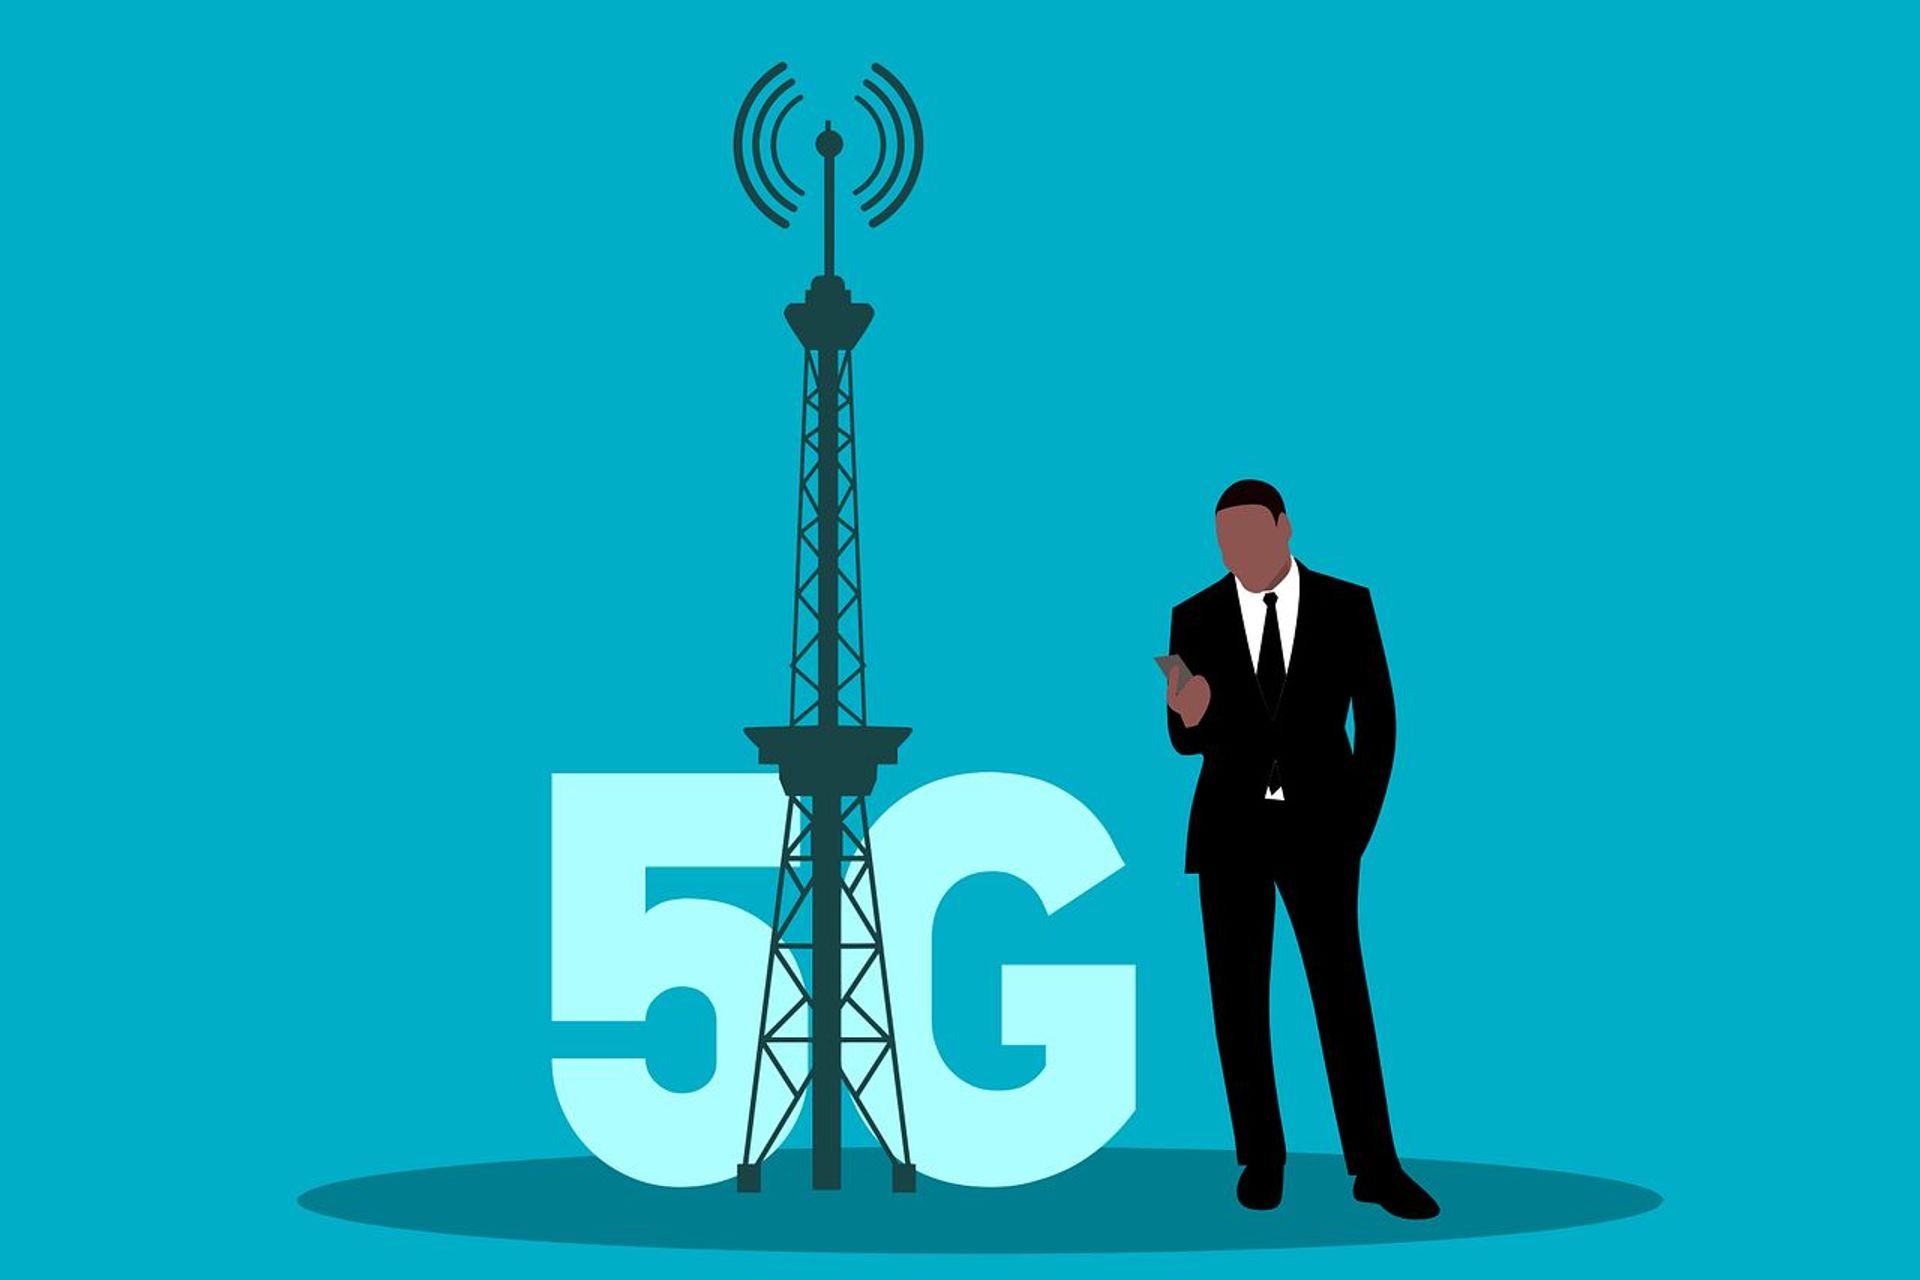 La connessione radiomobile 5G è destinata a trasformare la società europea